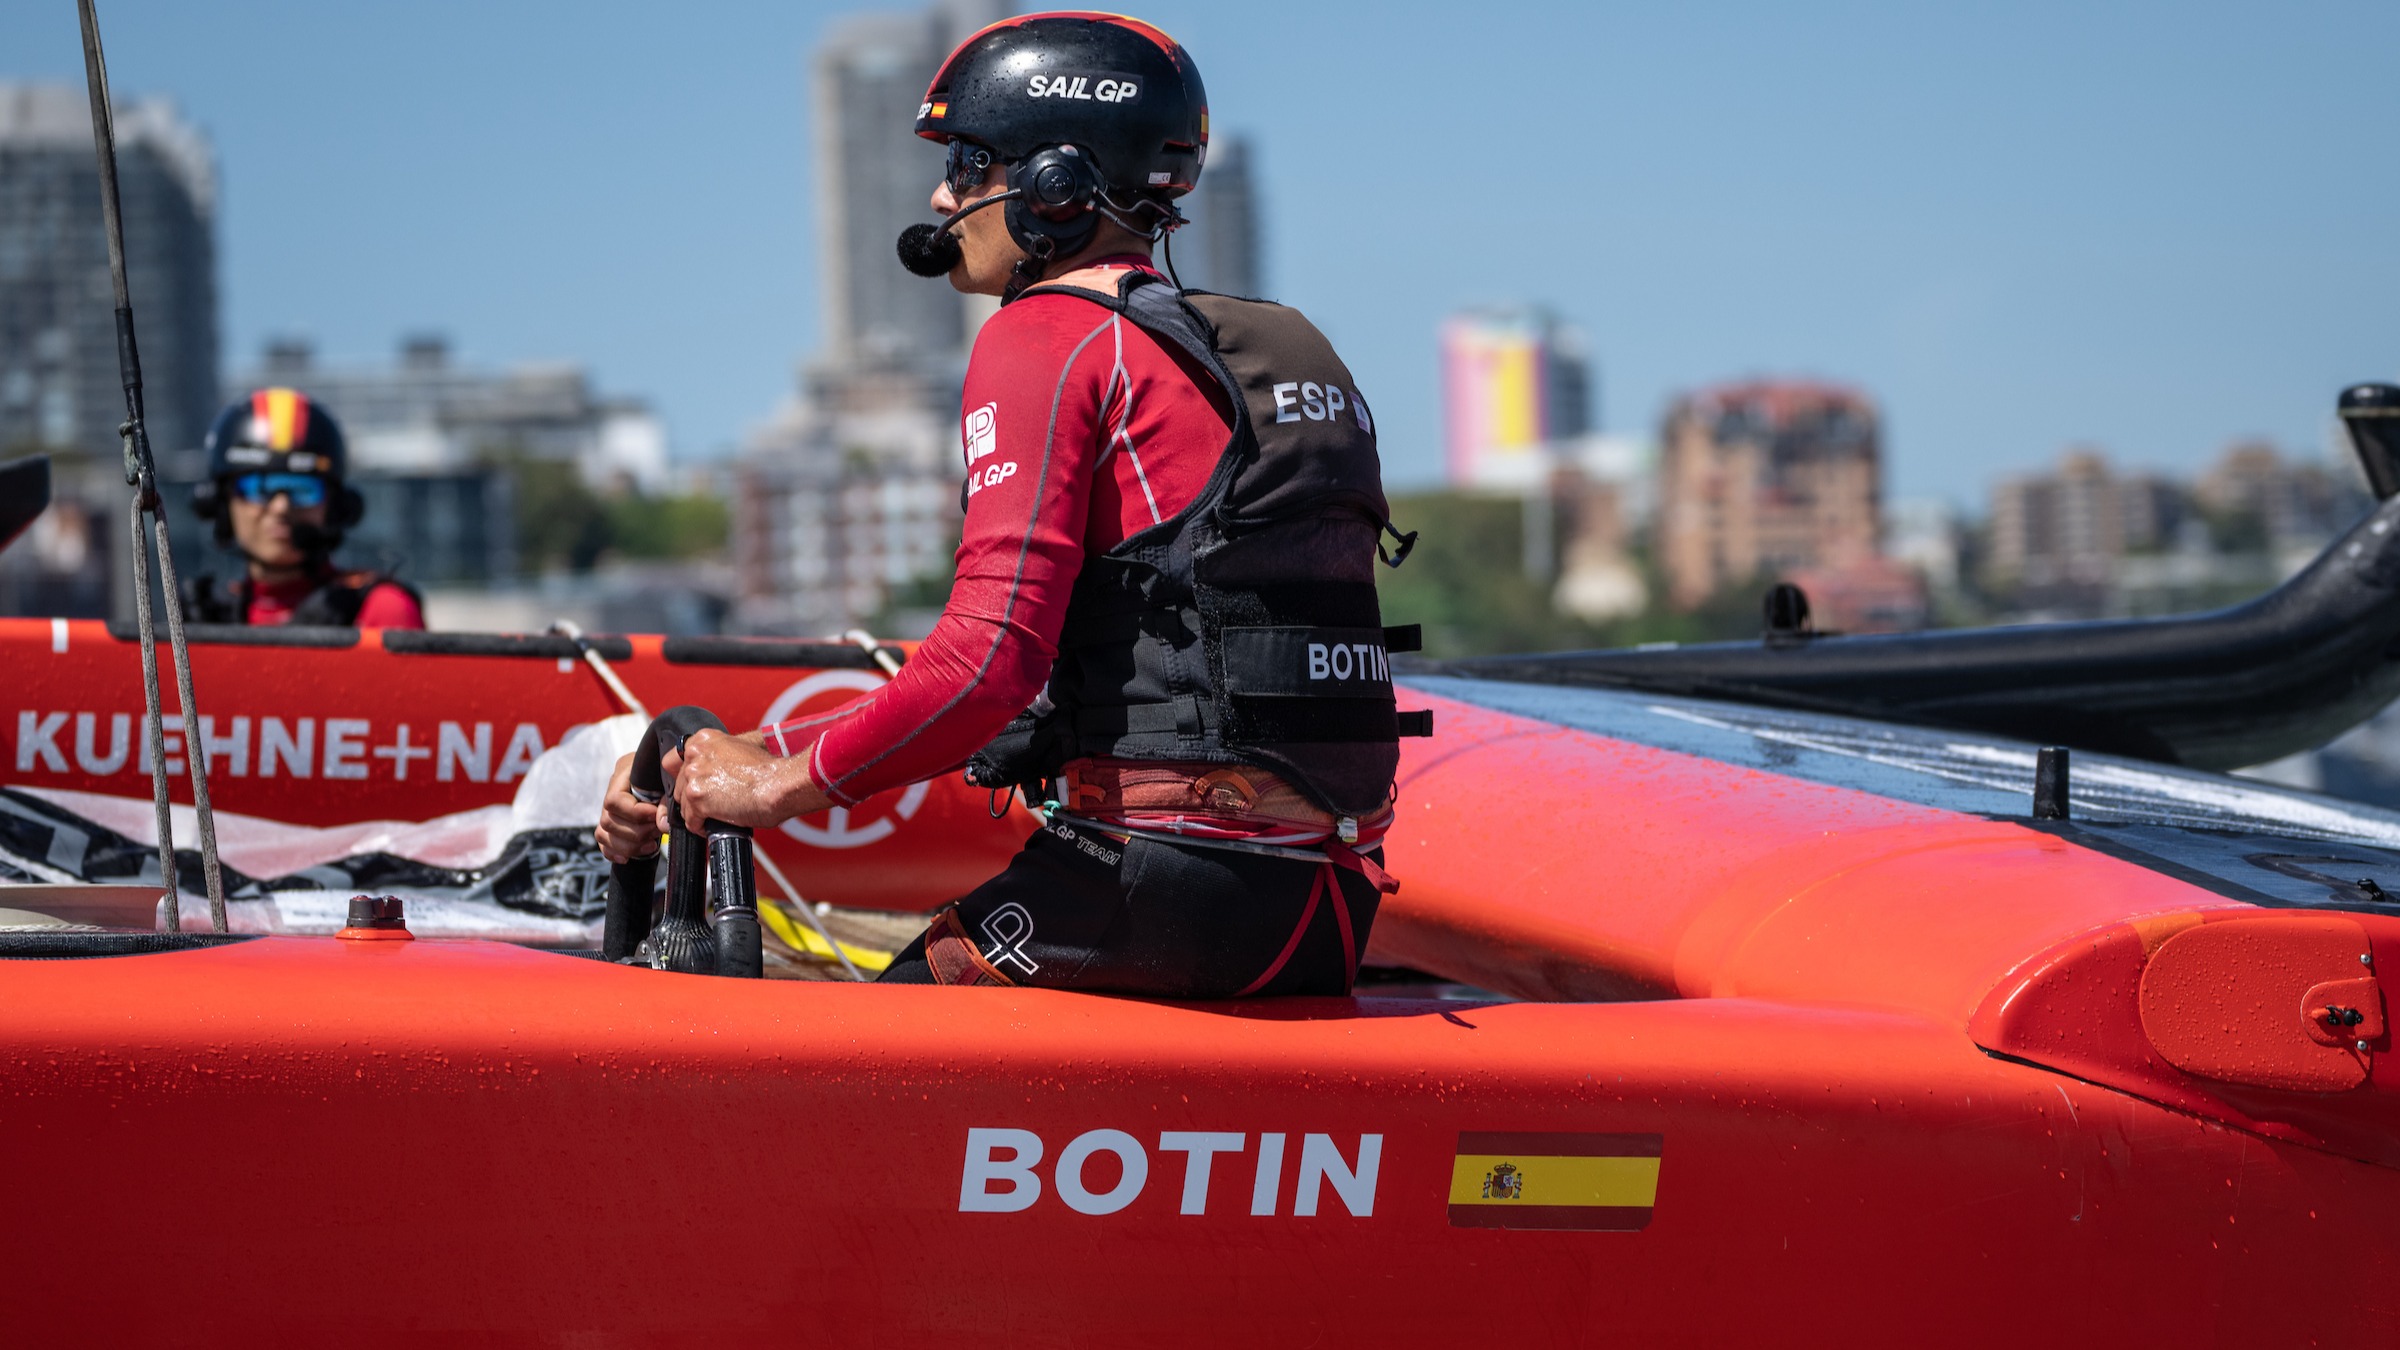 Season 3 // Australia Sail Grand Prix // Diego Botin at the wheel